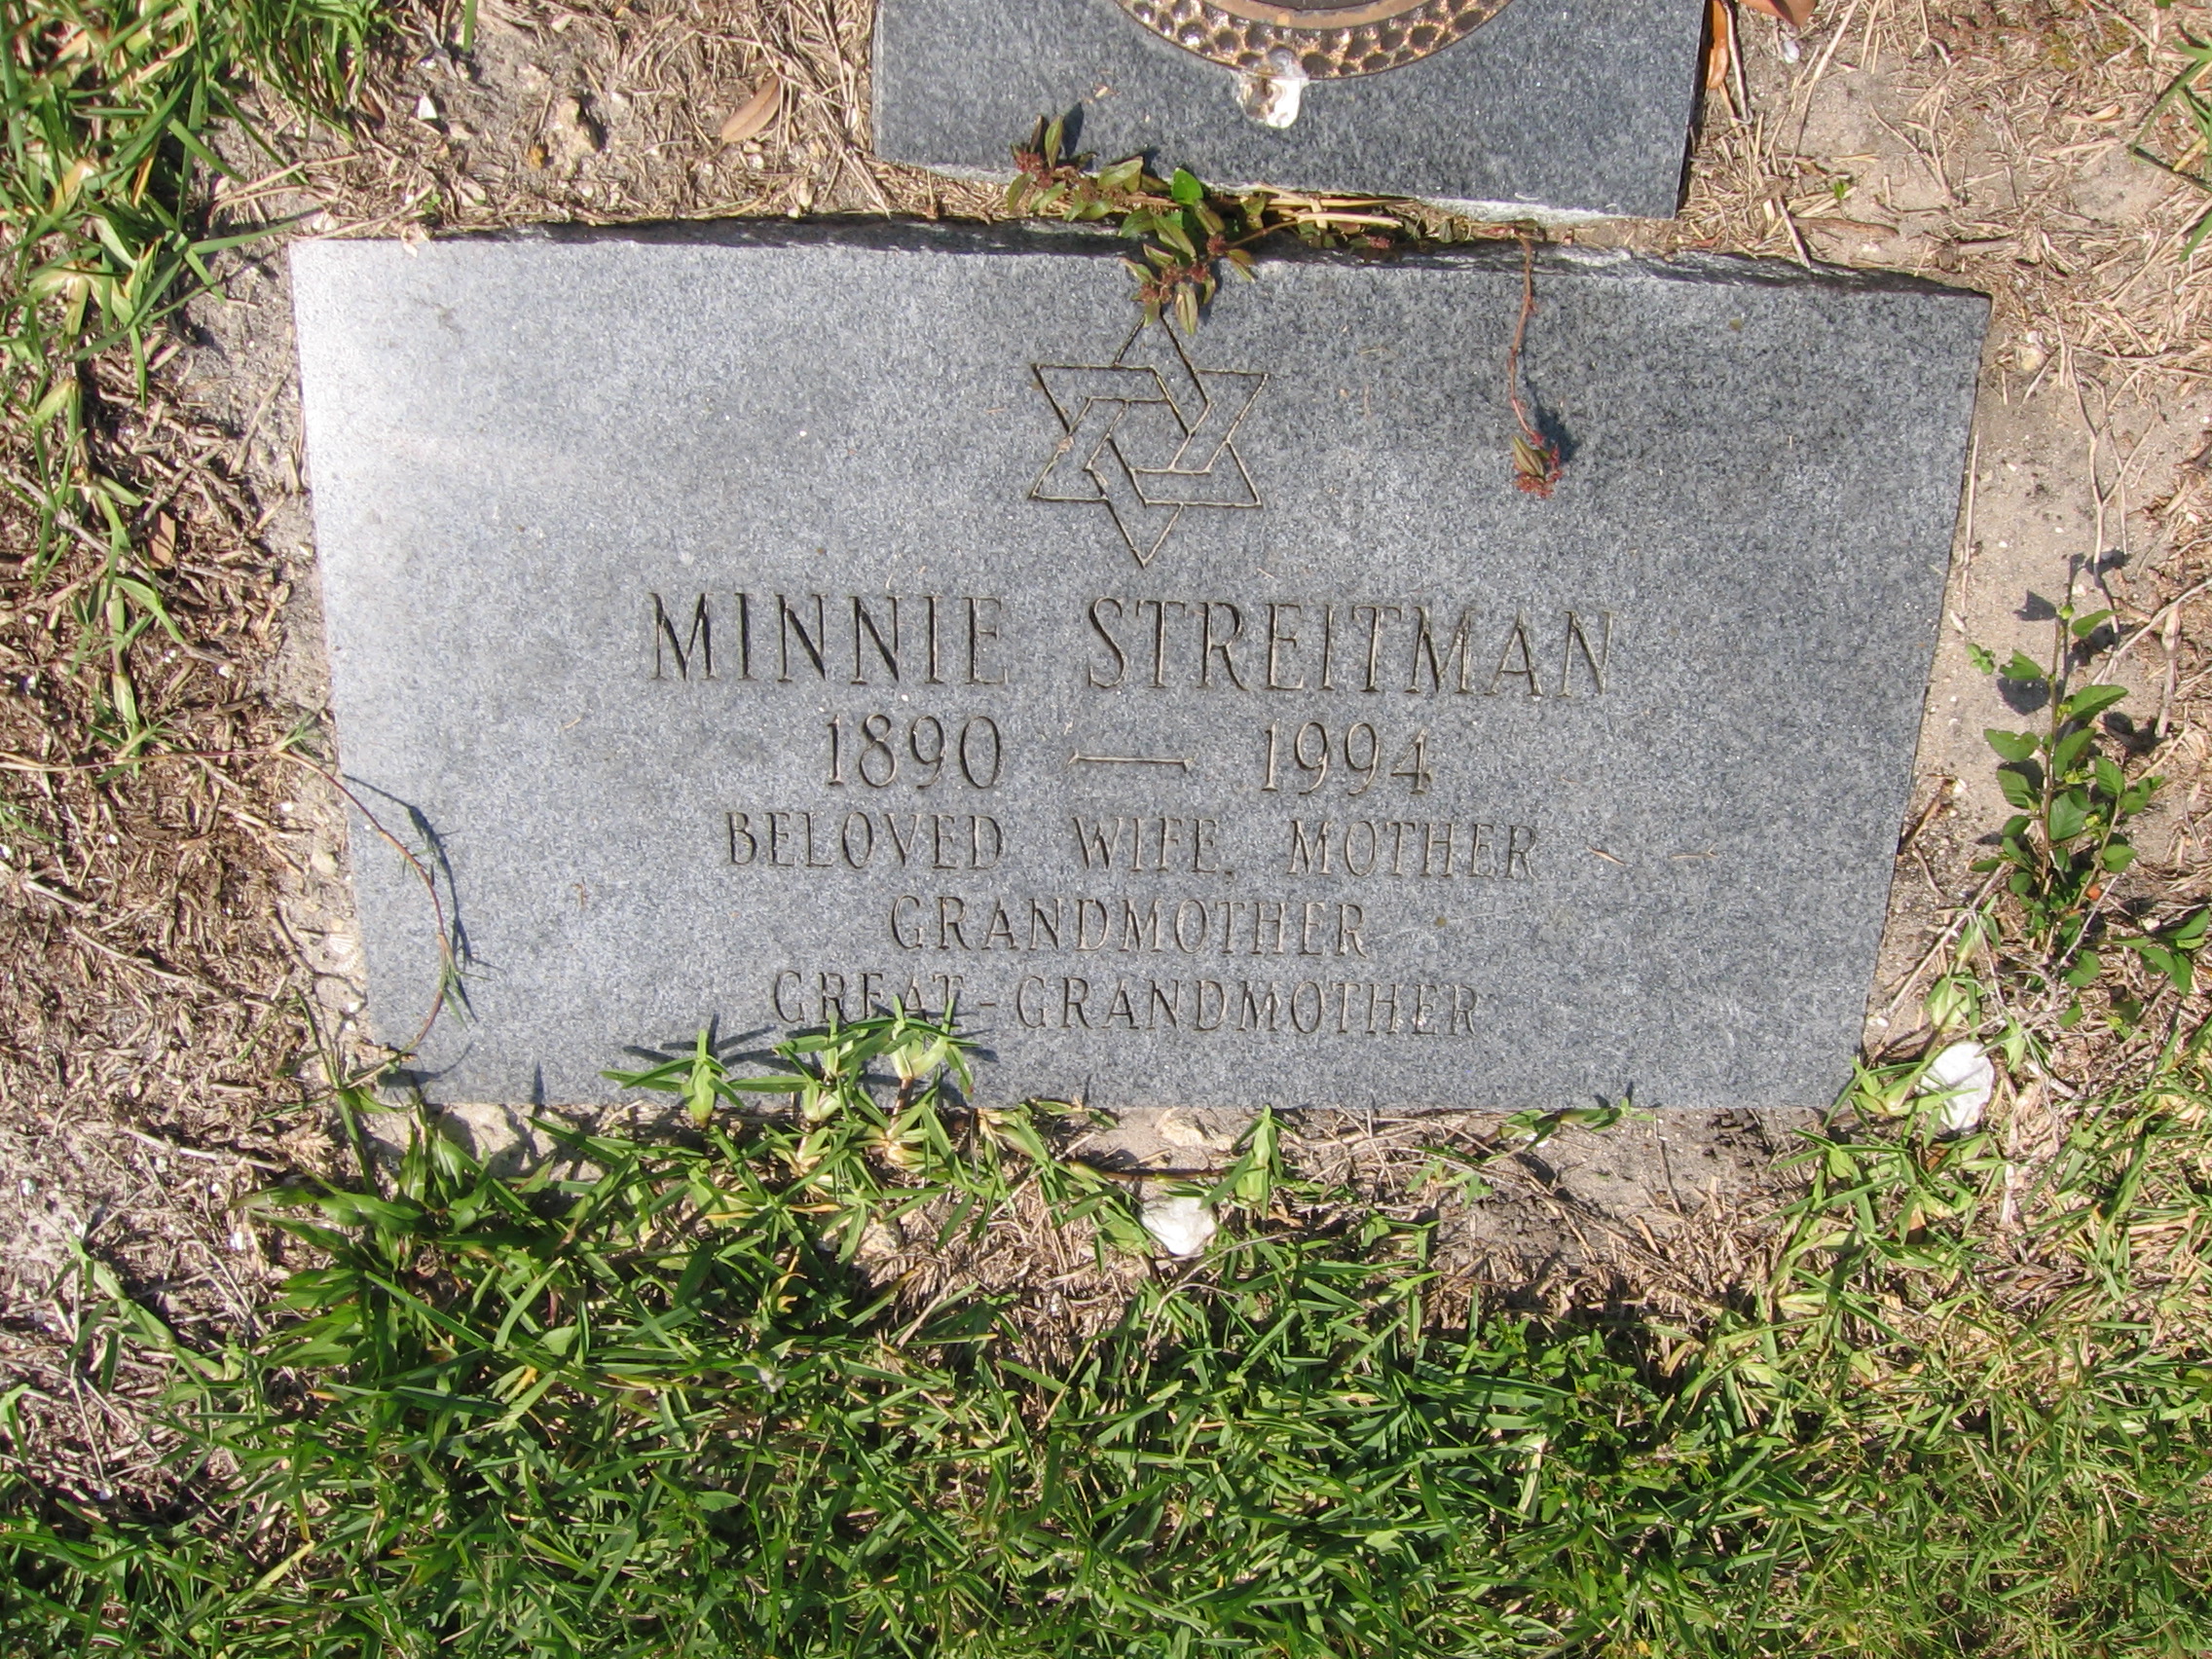 Minnie Streitman